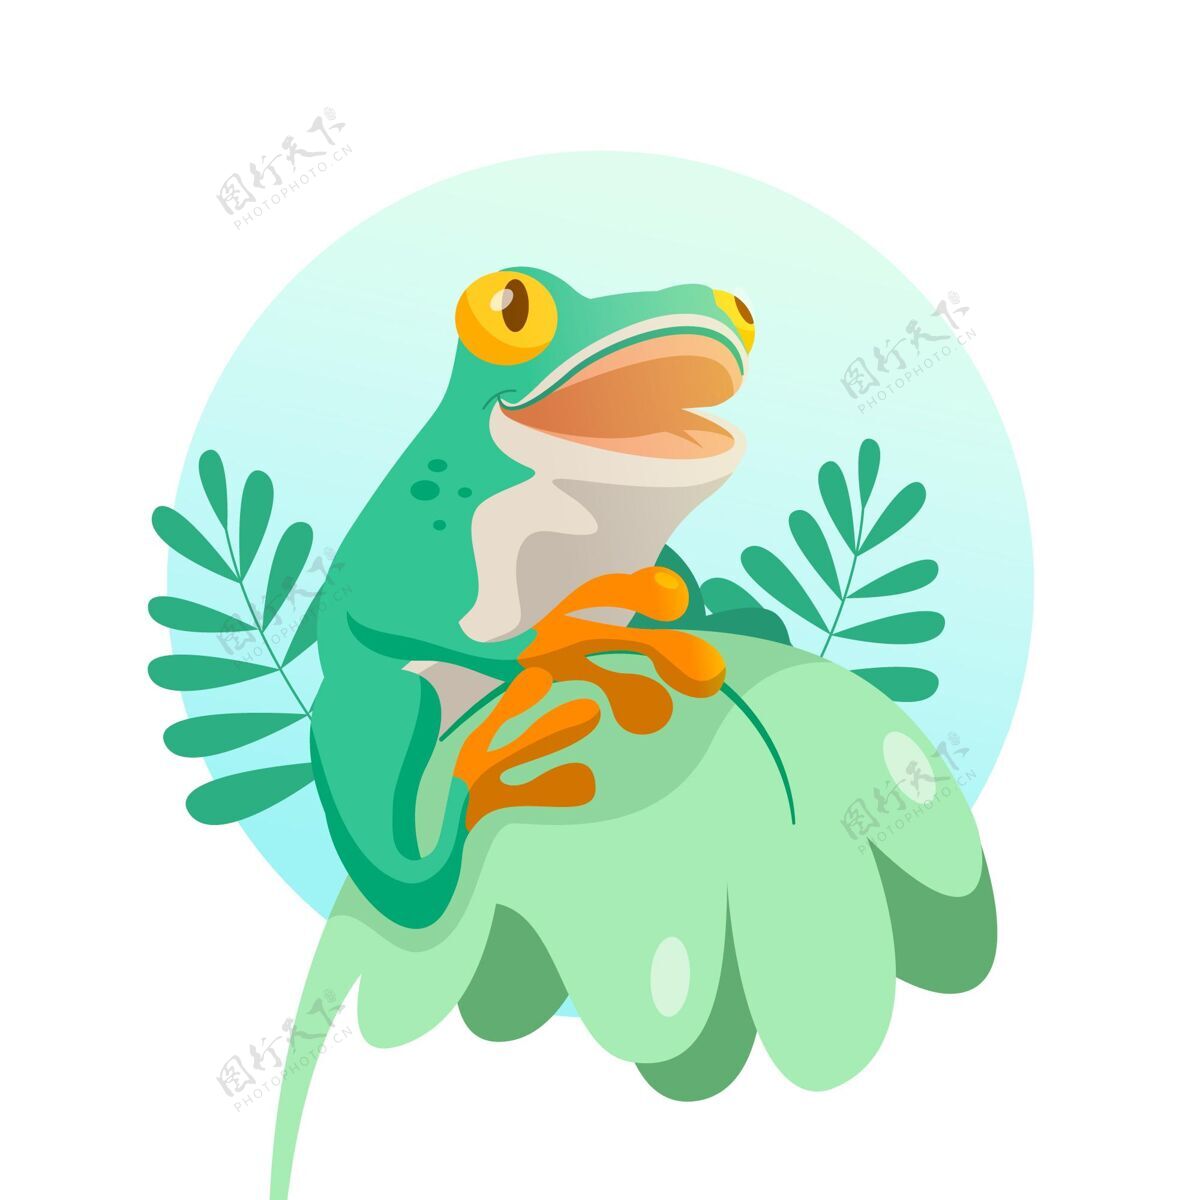 青蛙有机平面可爱青蛙插图可爱野生动物动物